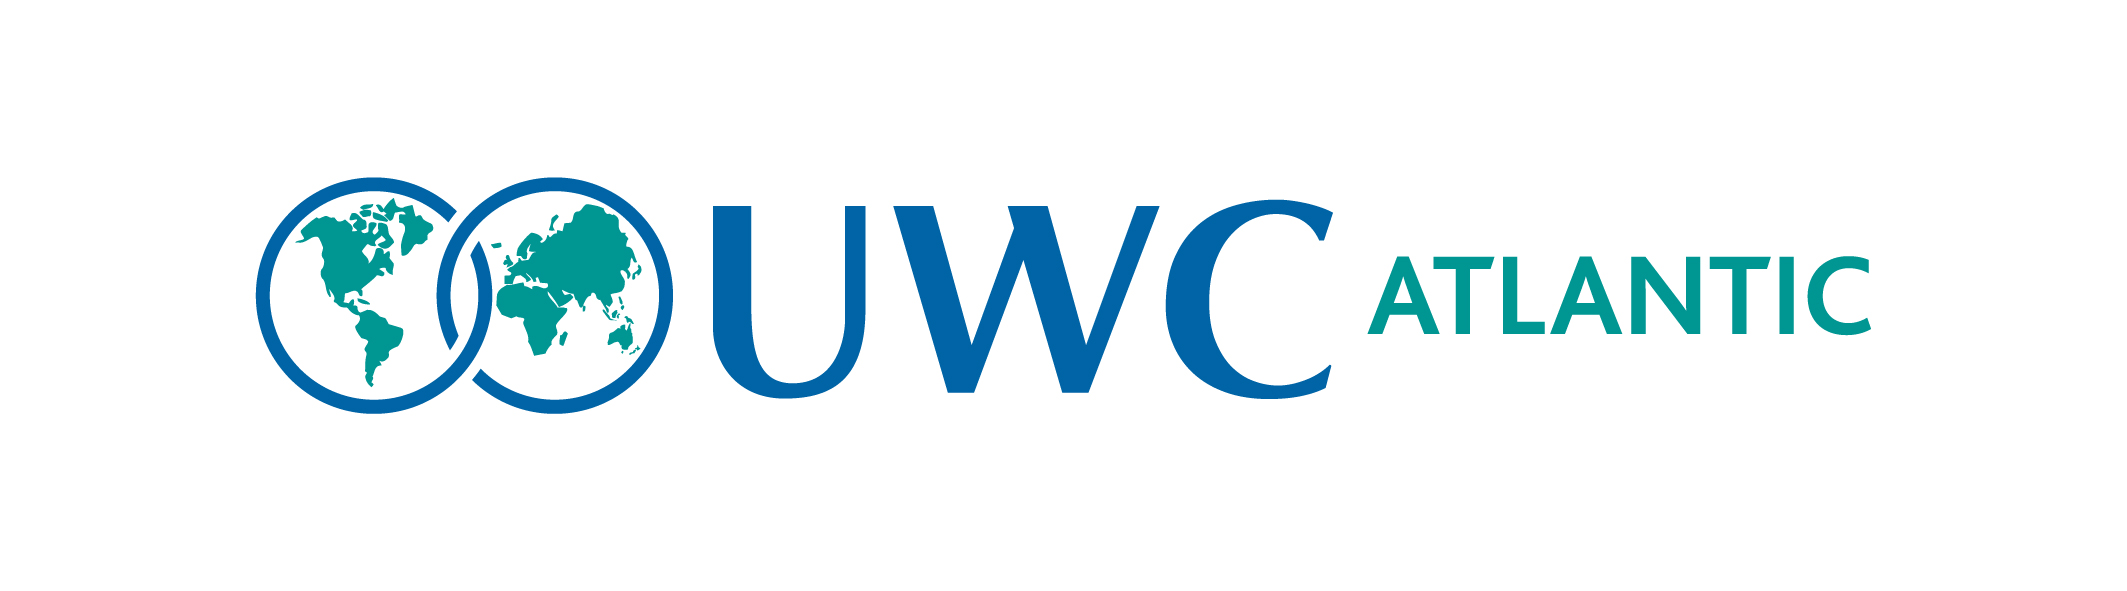 logo for UWC Atlantic College